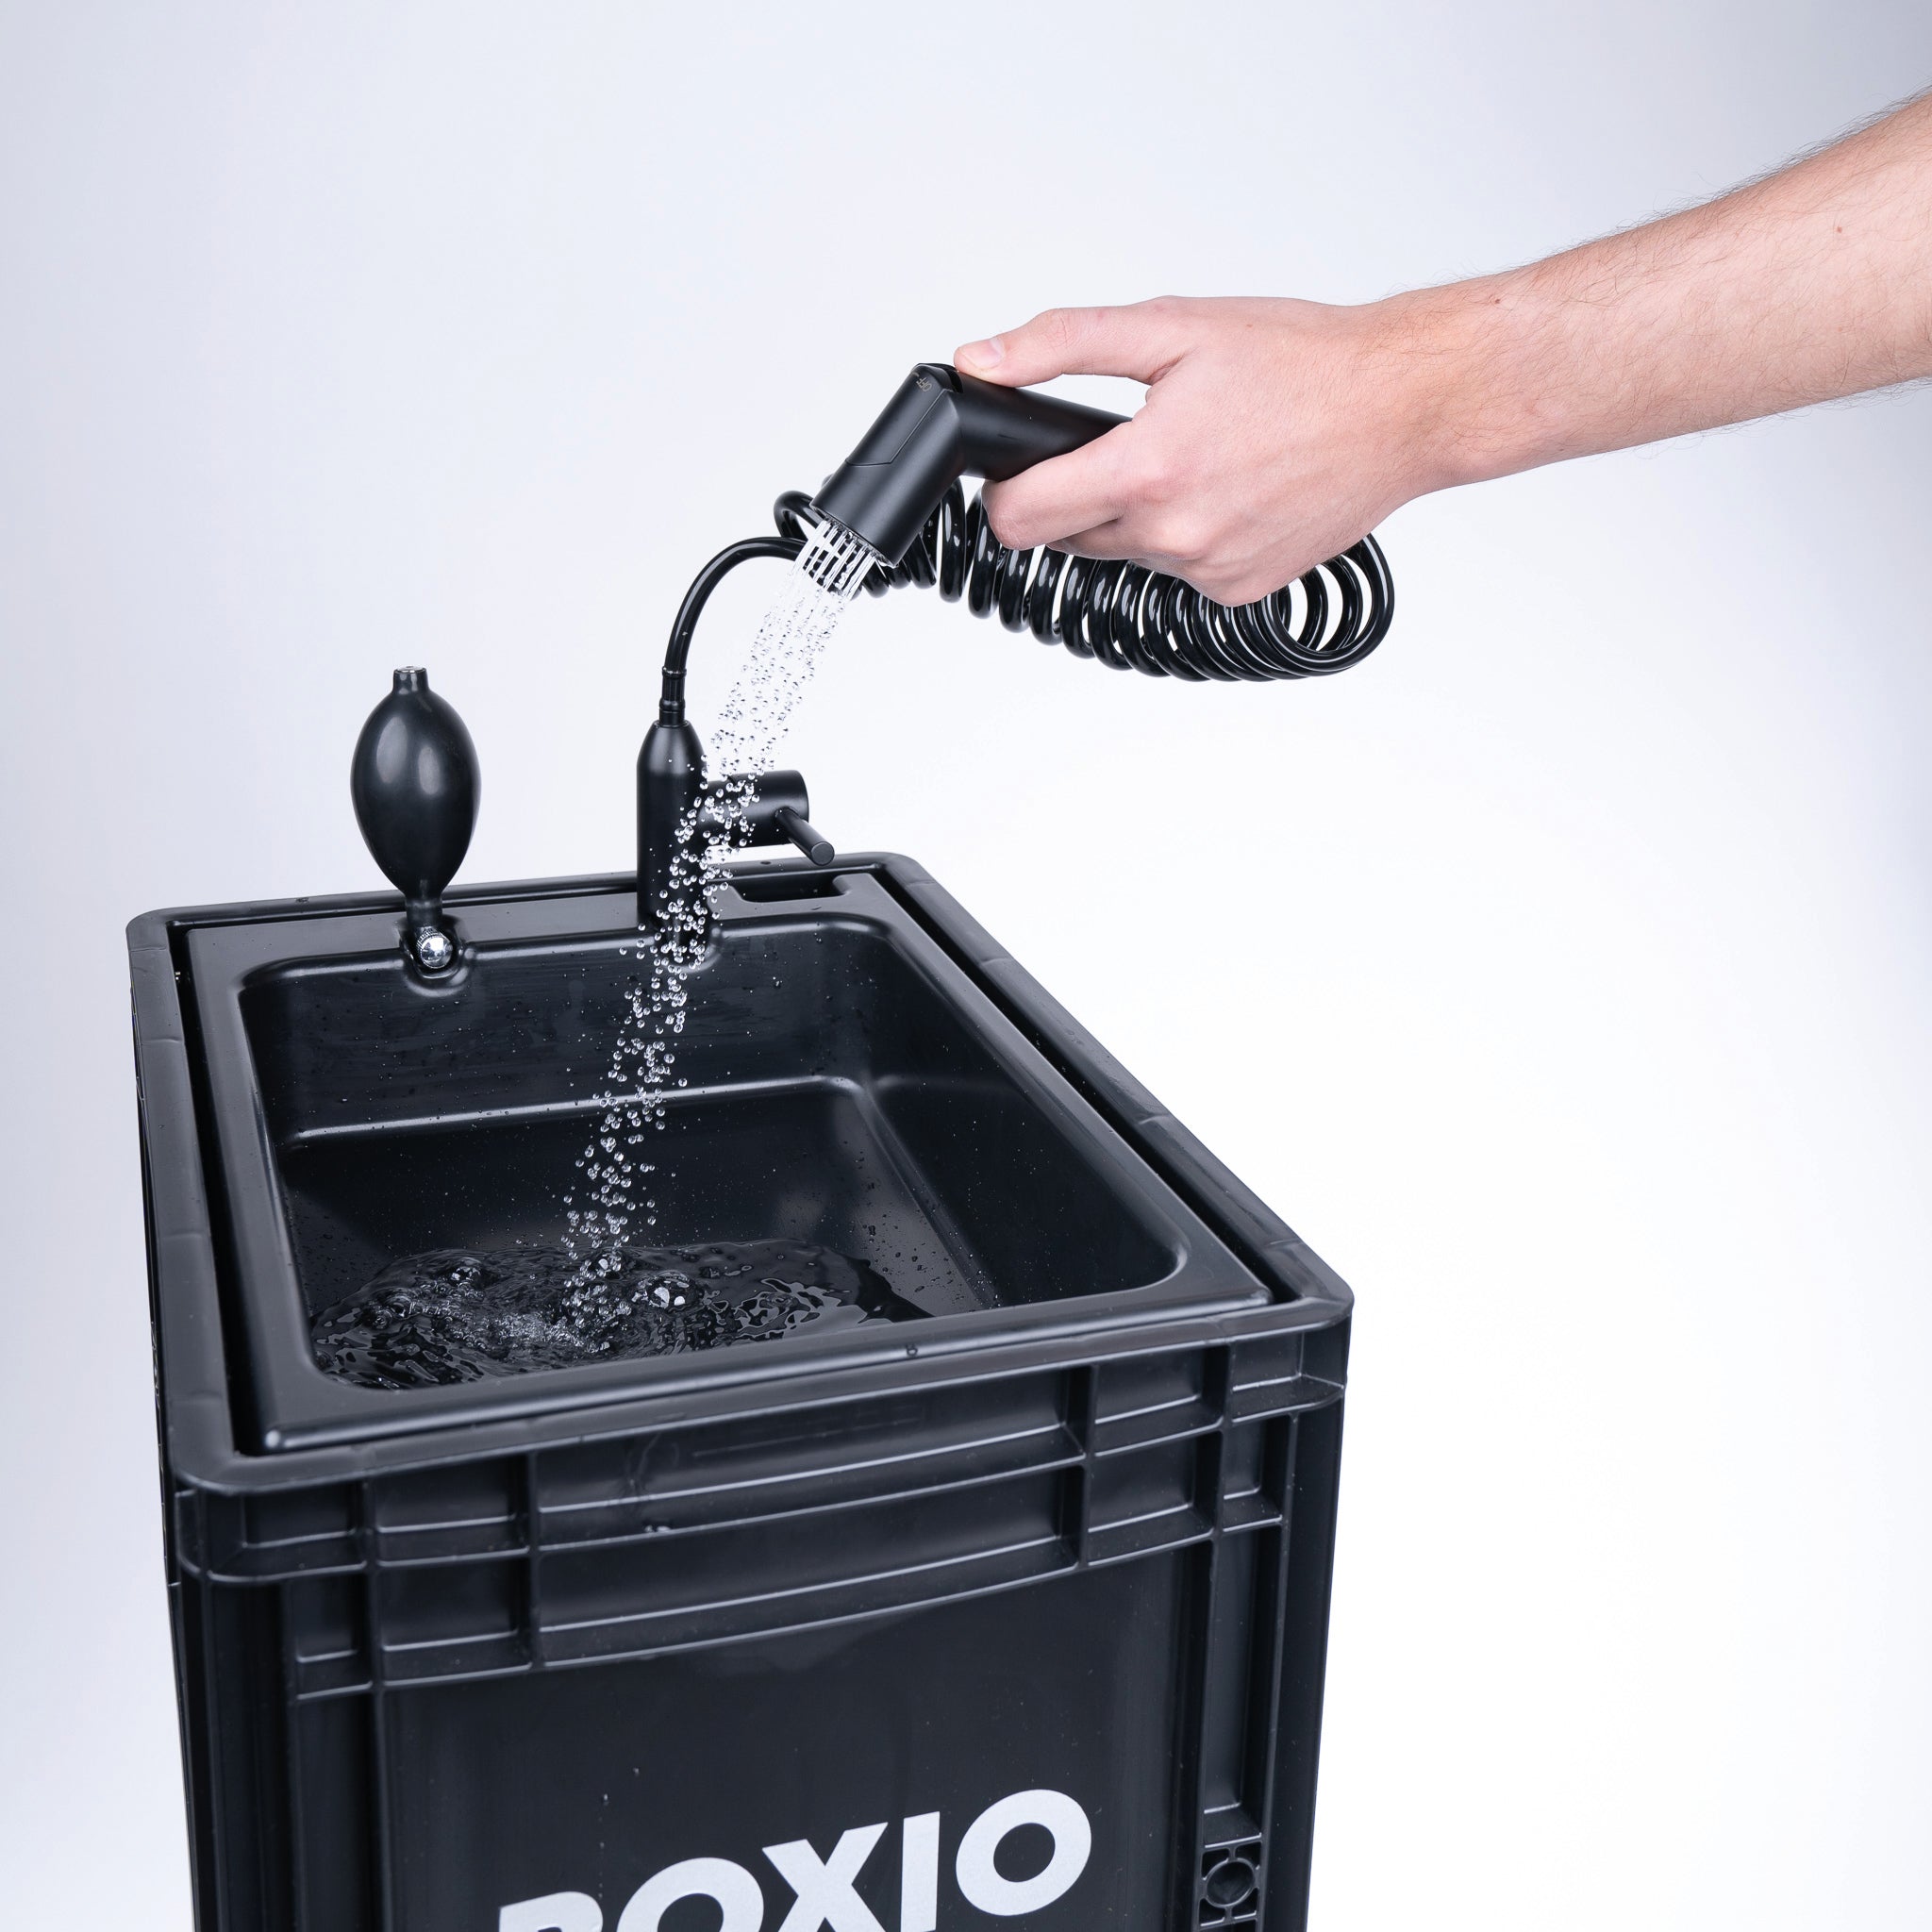 BOXIO - WASH PLUS - Startsæt til håndvask